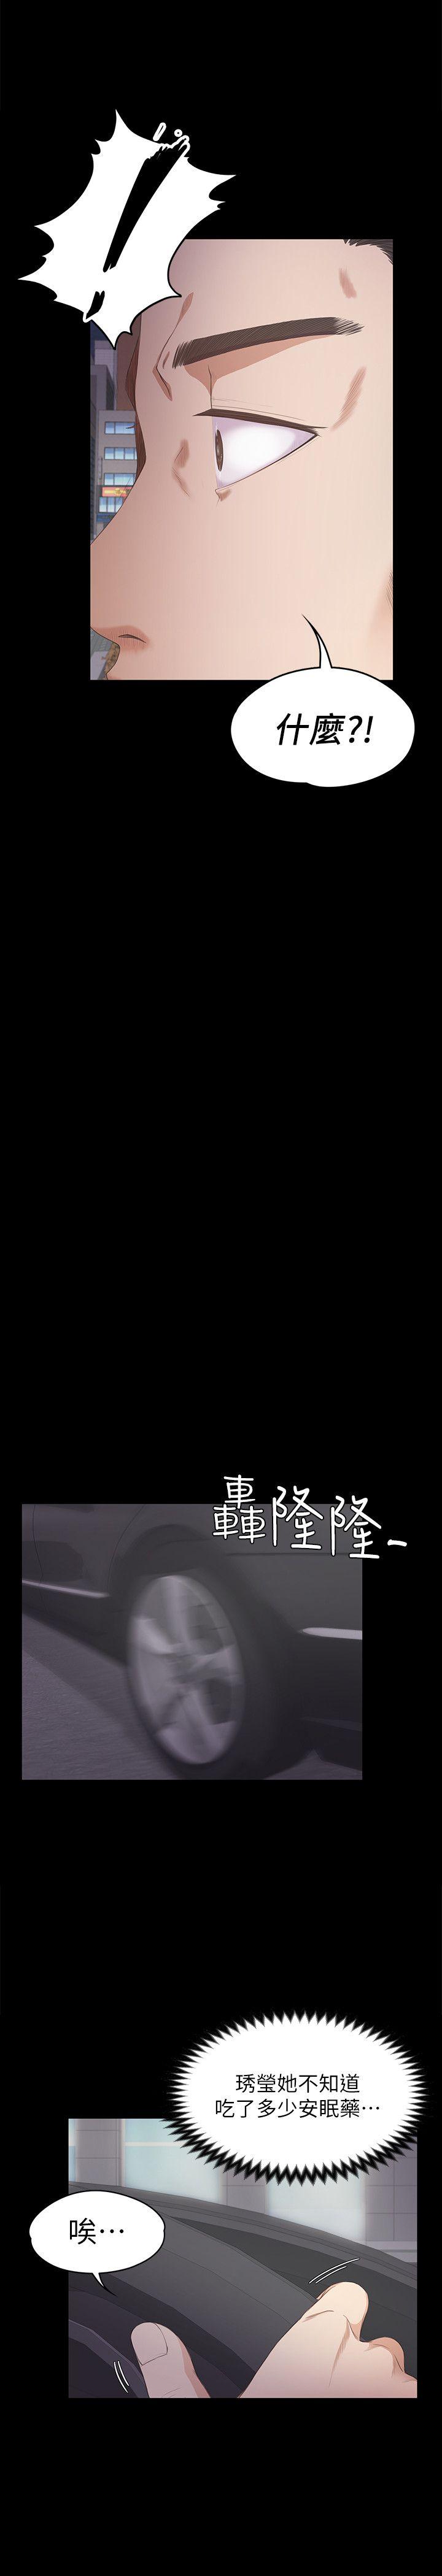 《爱上酒店妹(江南罗曼史)》漫画 第33话-盛开以及枯萎的花朵[02]